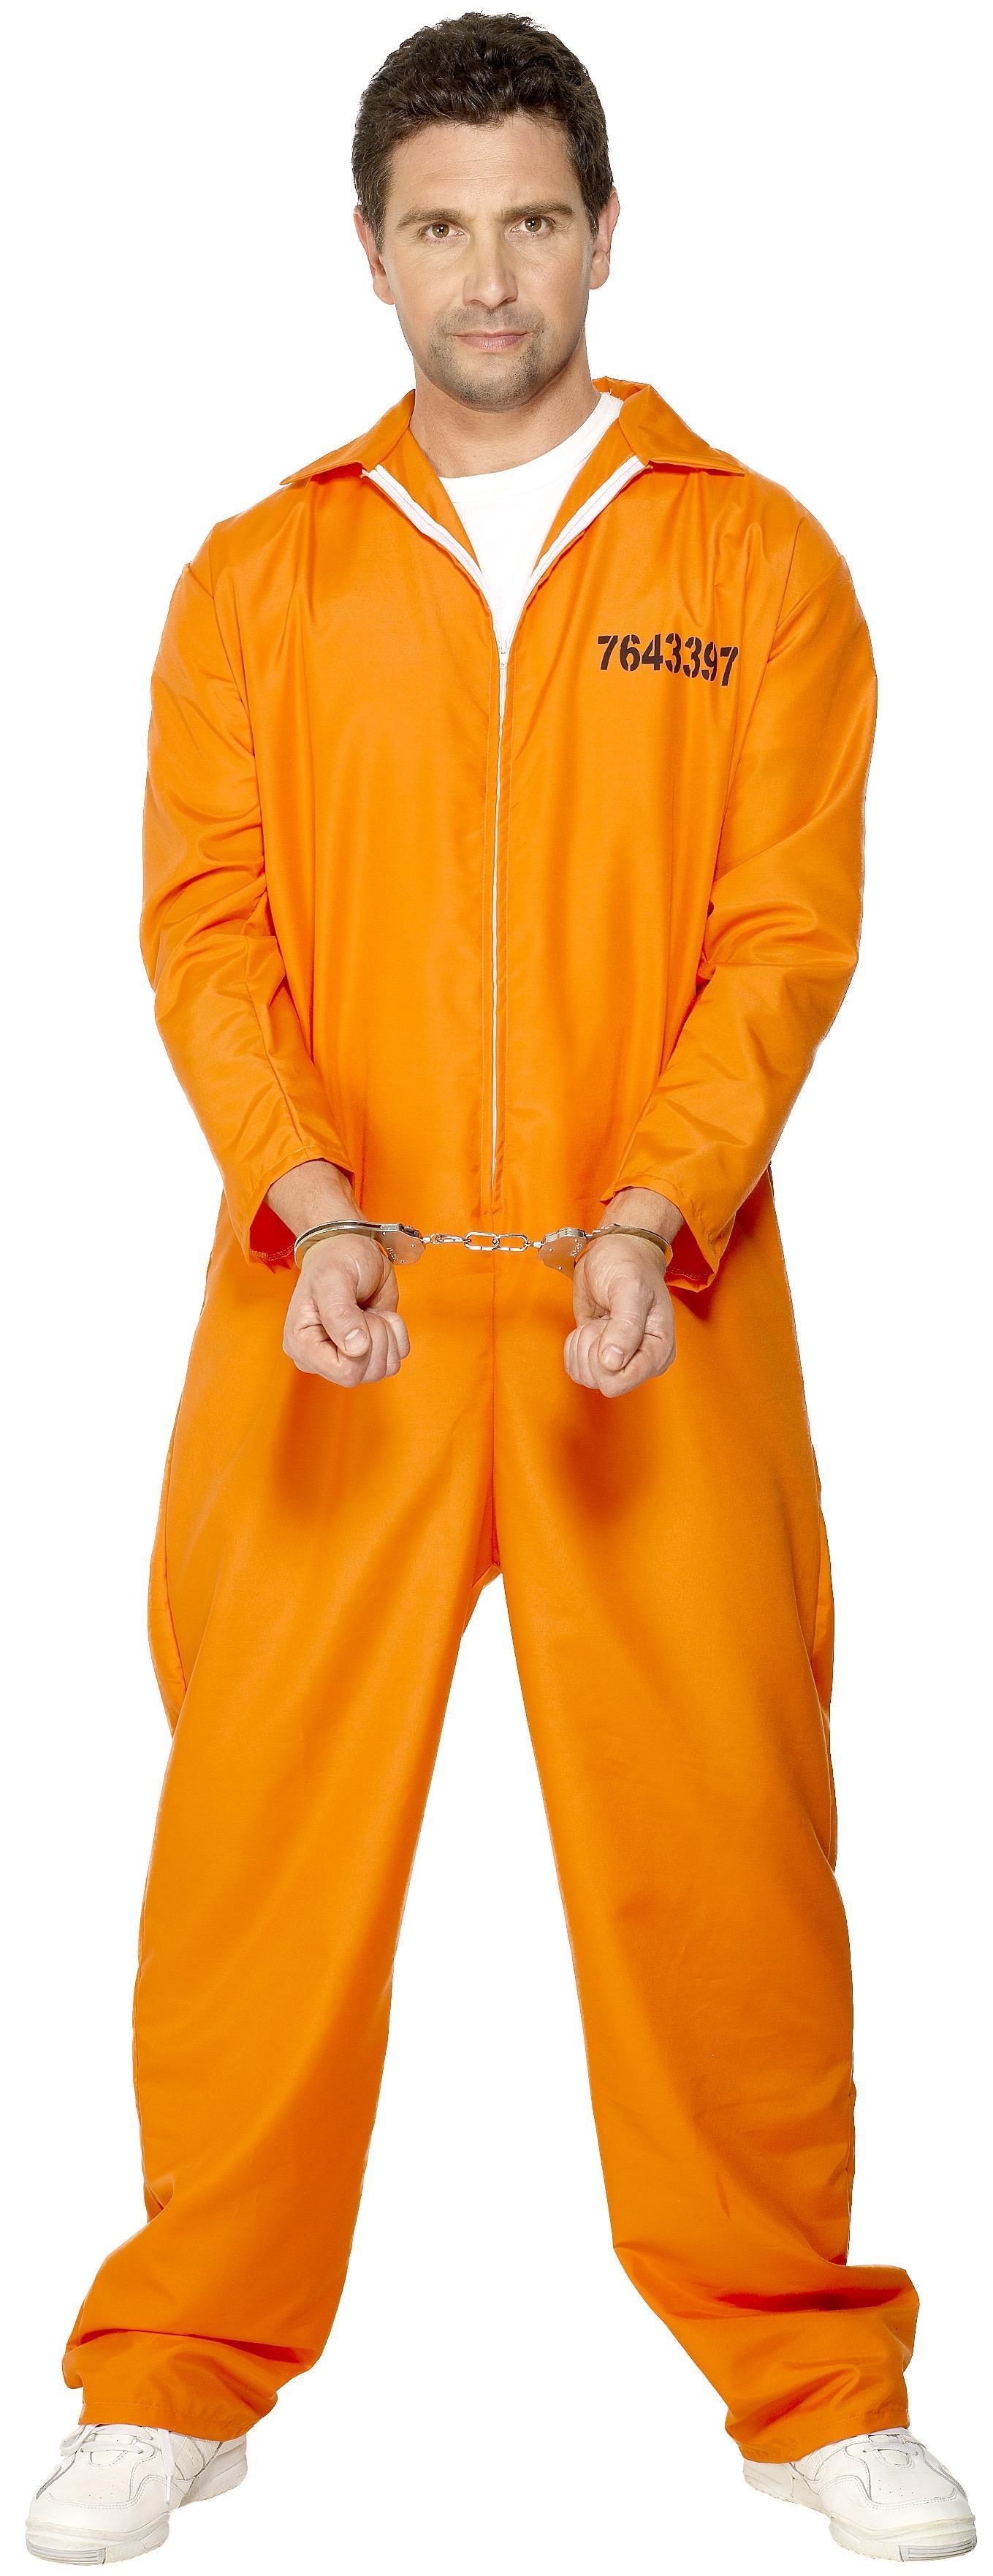 Escaped Prisoner Costume Orange